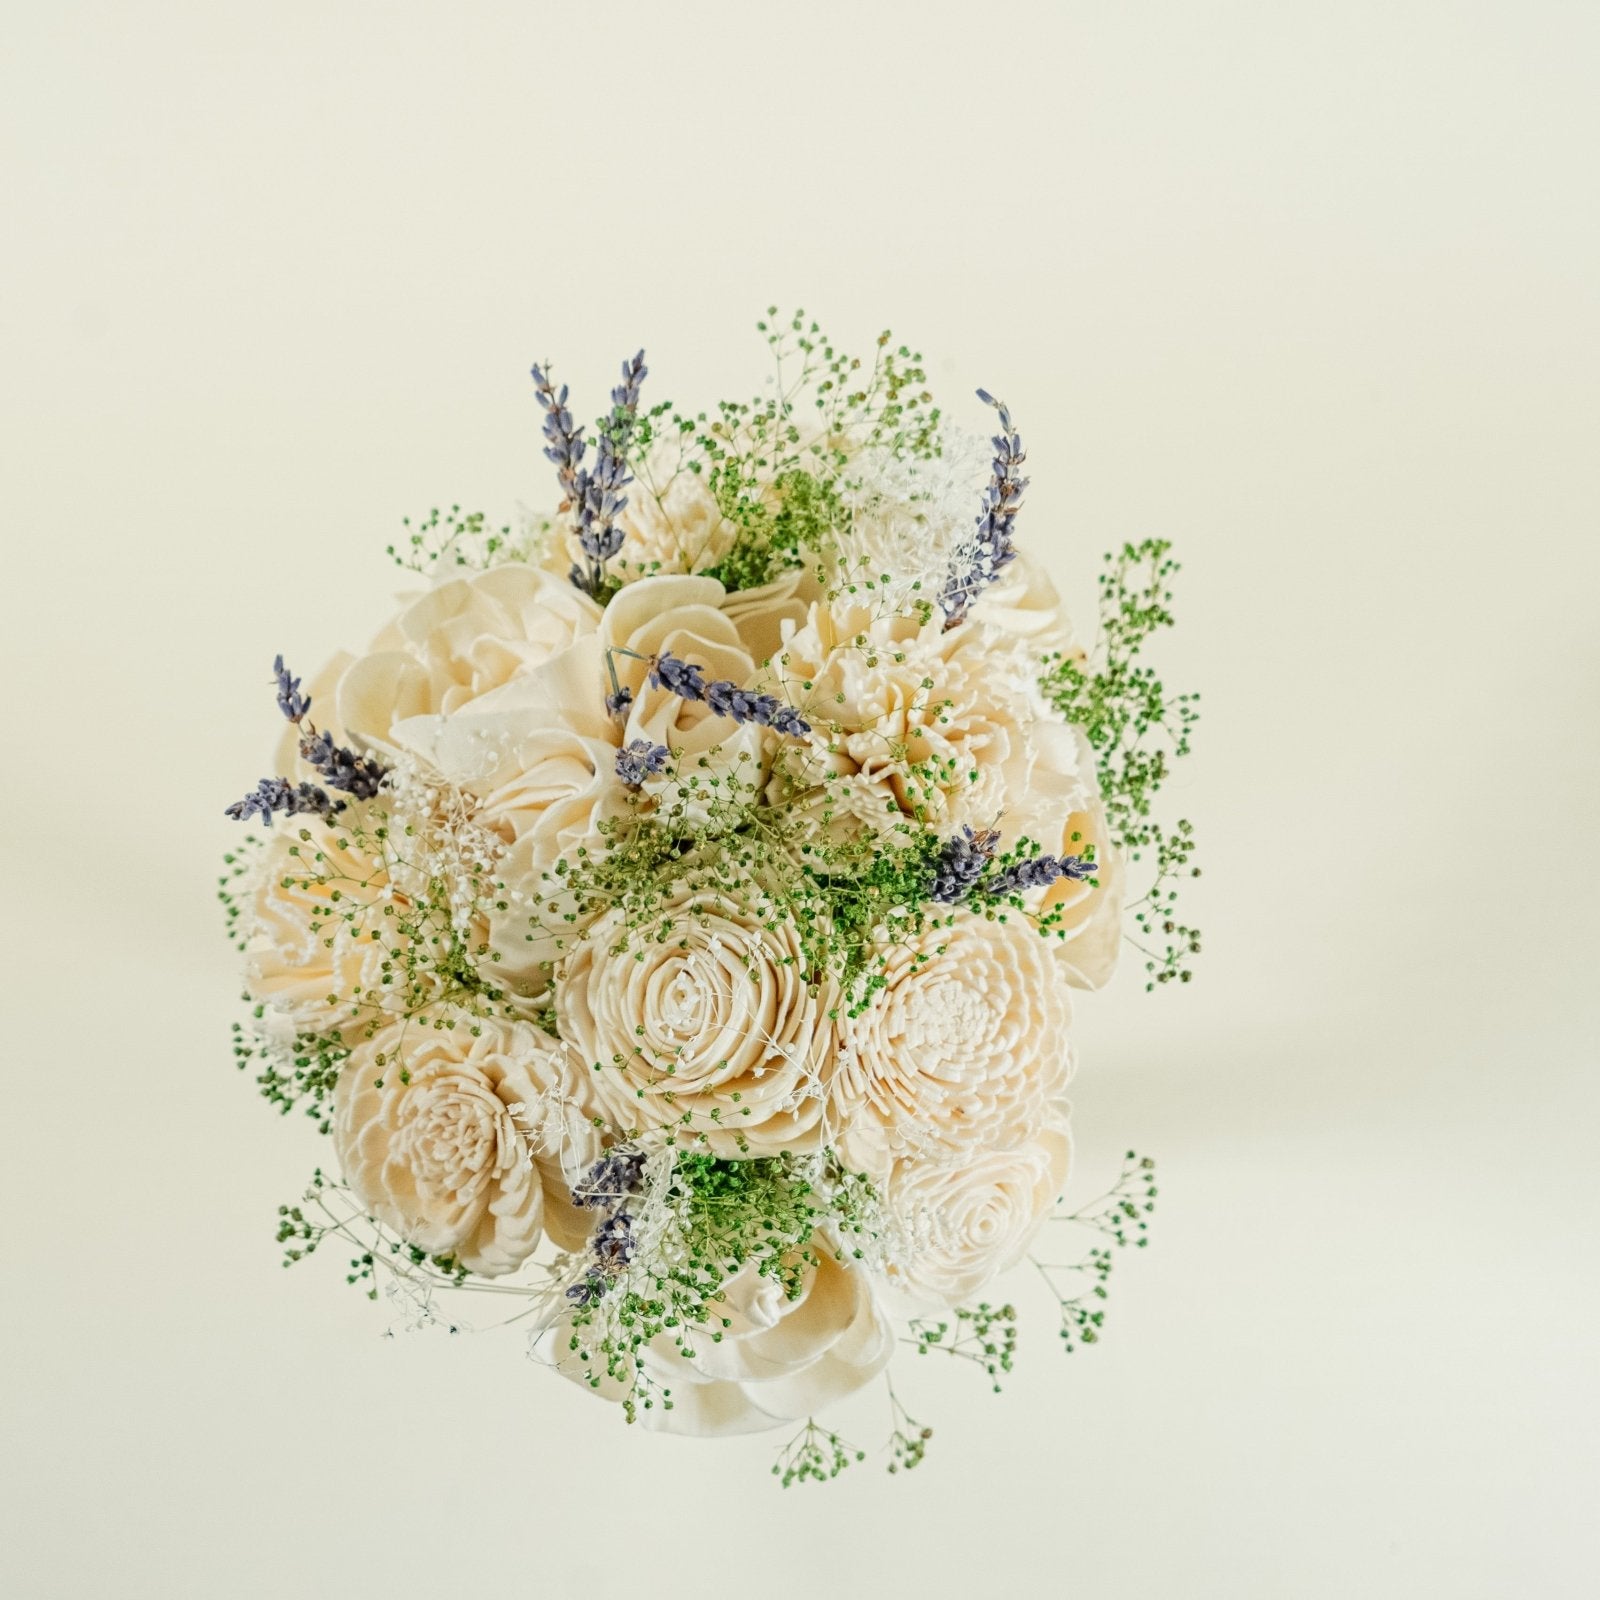 Burlap Natural Mini Rose Flower Stems, Rustic Wedding Favors